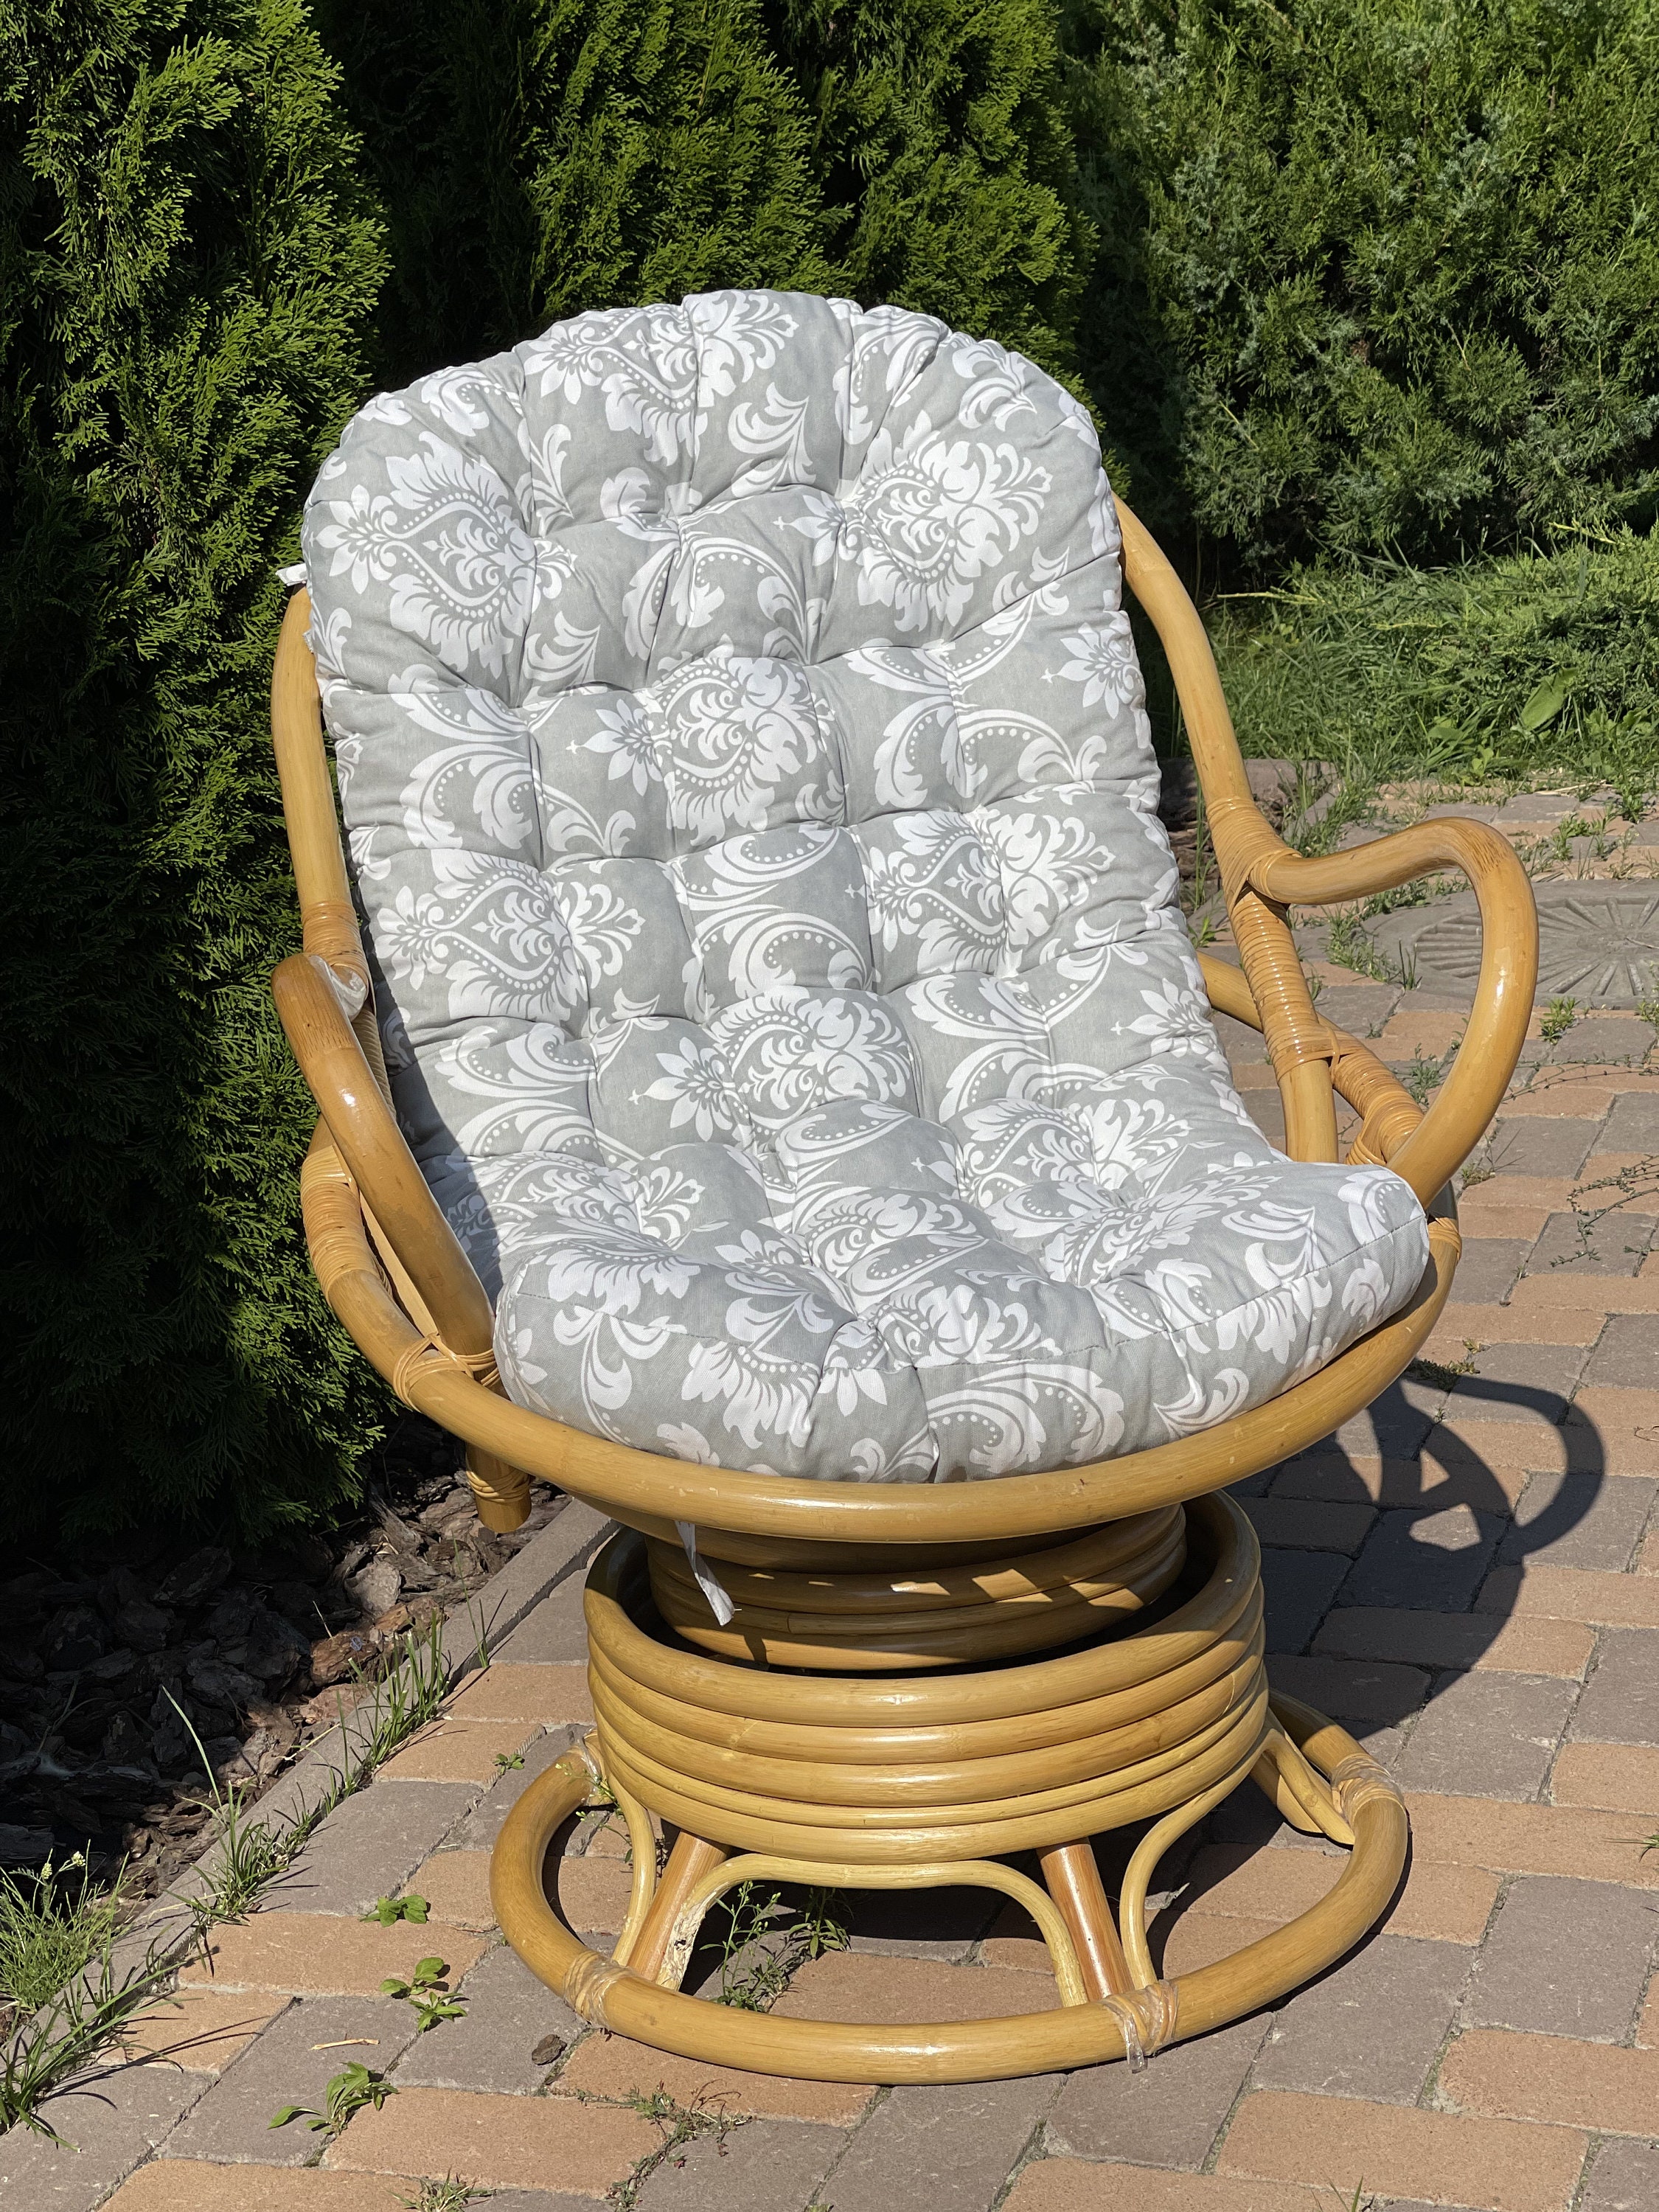 New Long Cushion Recliner Rocking Chair Cushion Thick Seat Cushion Rattan  Chair Sofa Cushion Garden Chair Cushion Tatami Mat